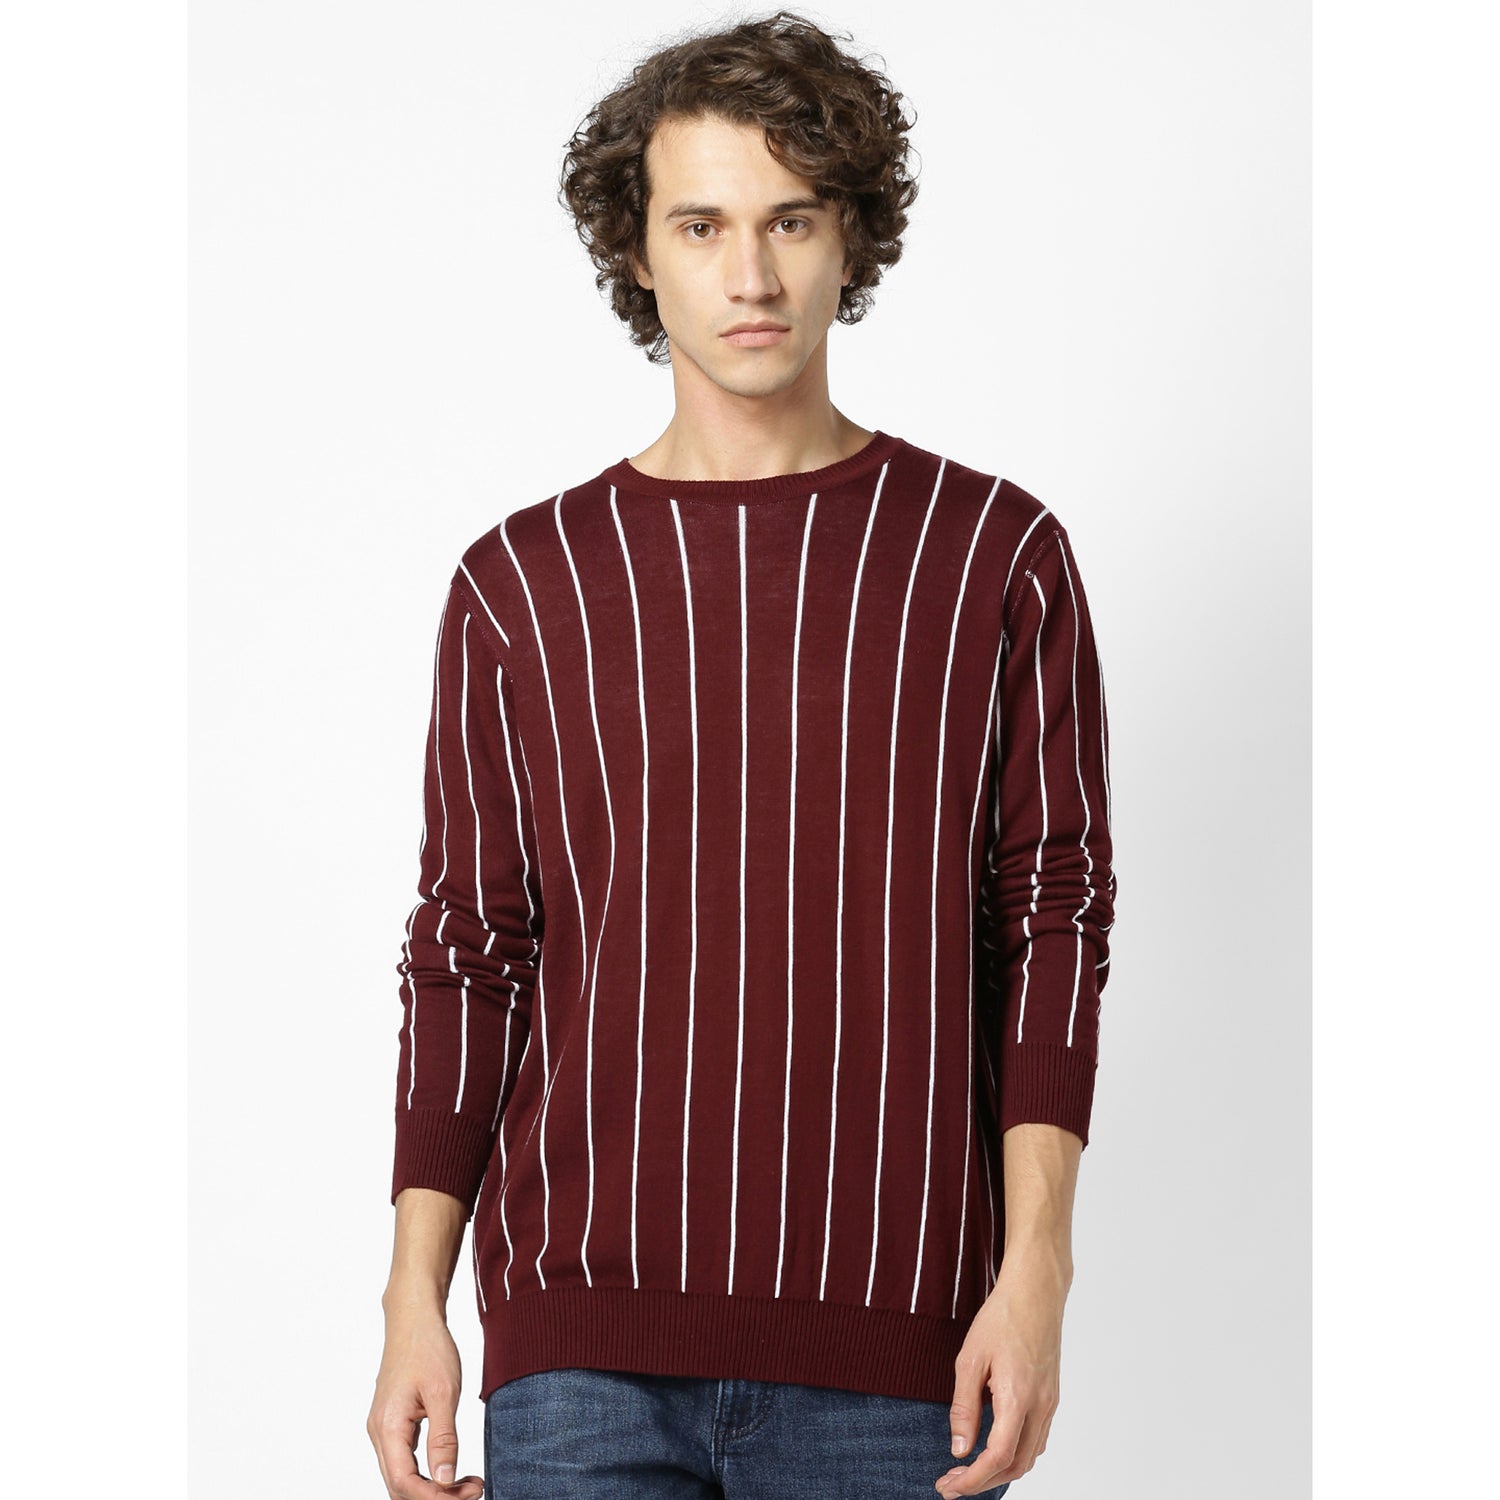 Maroon Striped Sweatshirt (SEREVERSE)